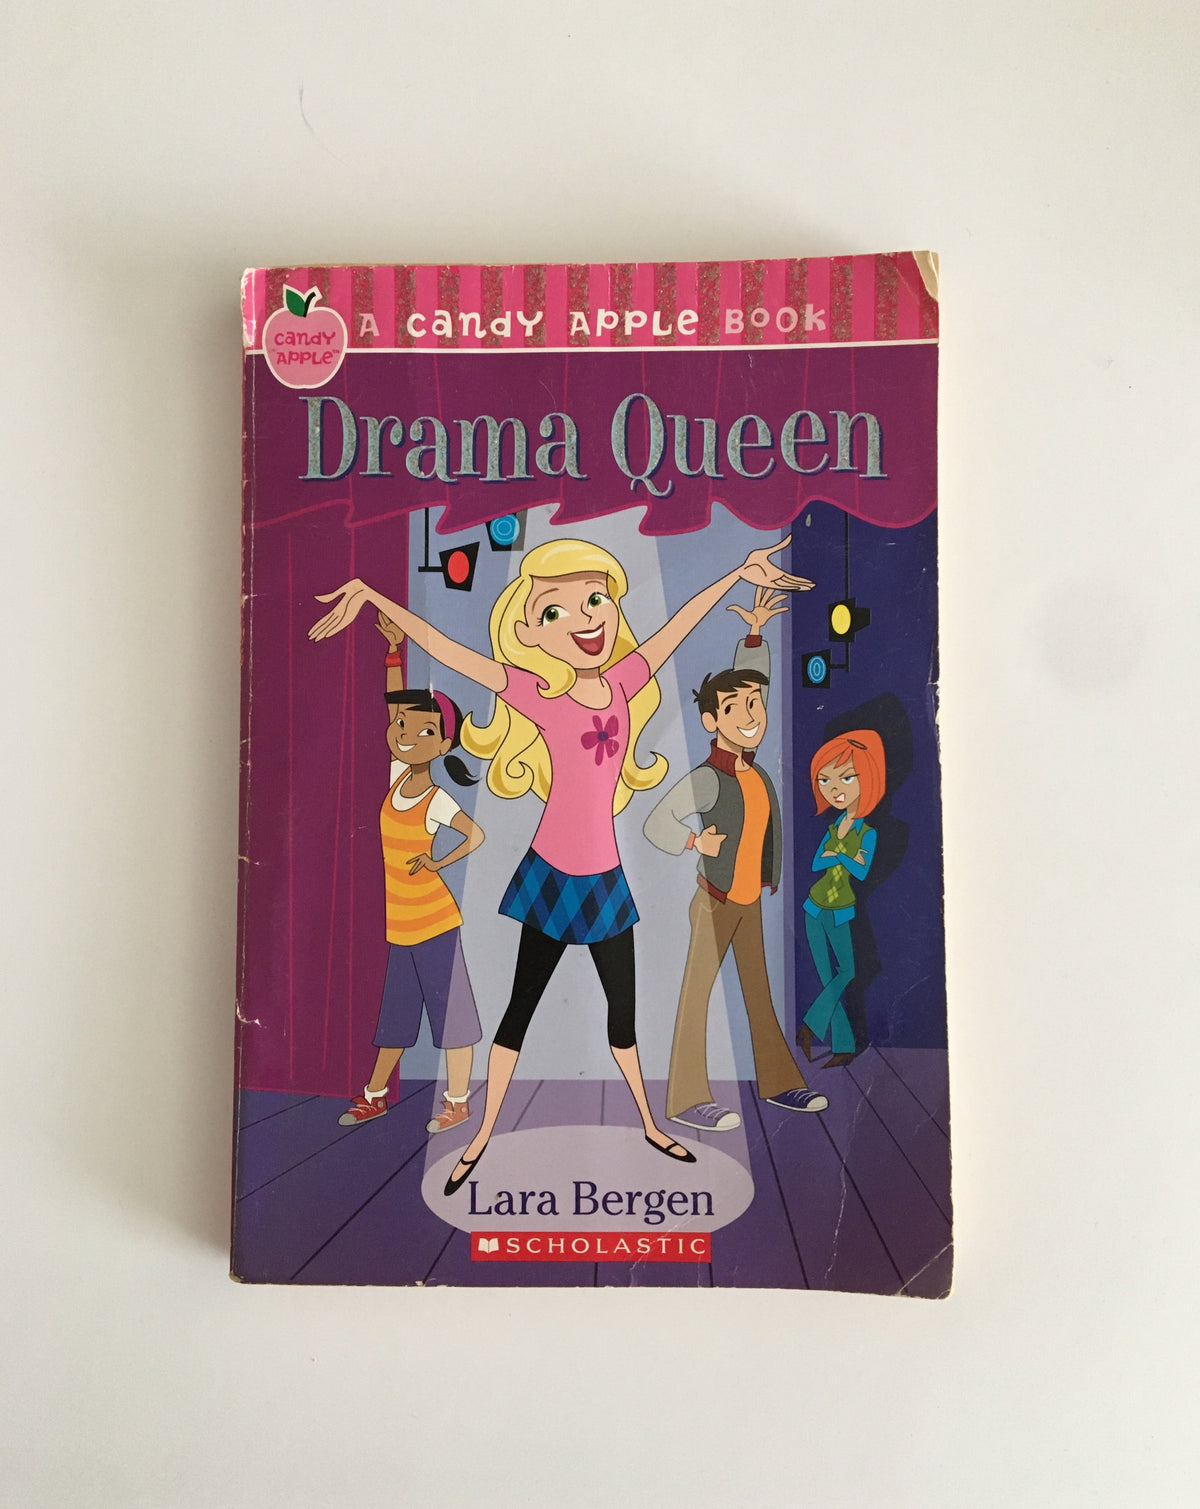 Drama Queen by Lara Bergen